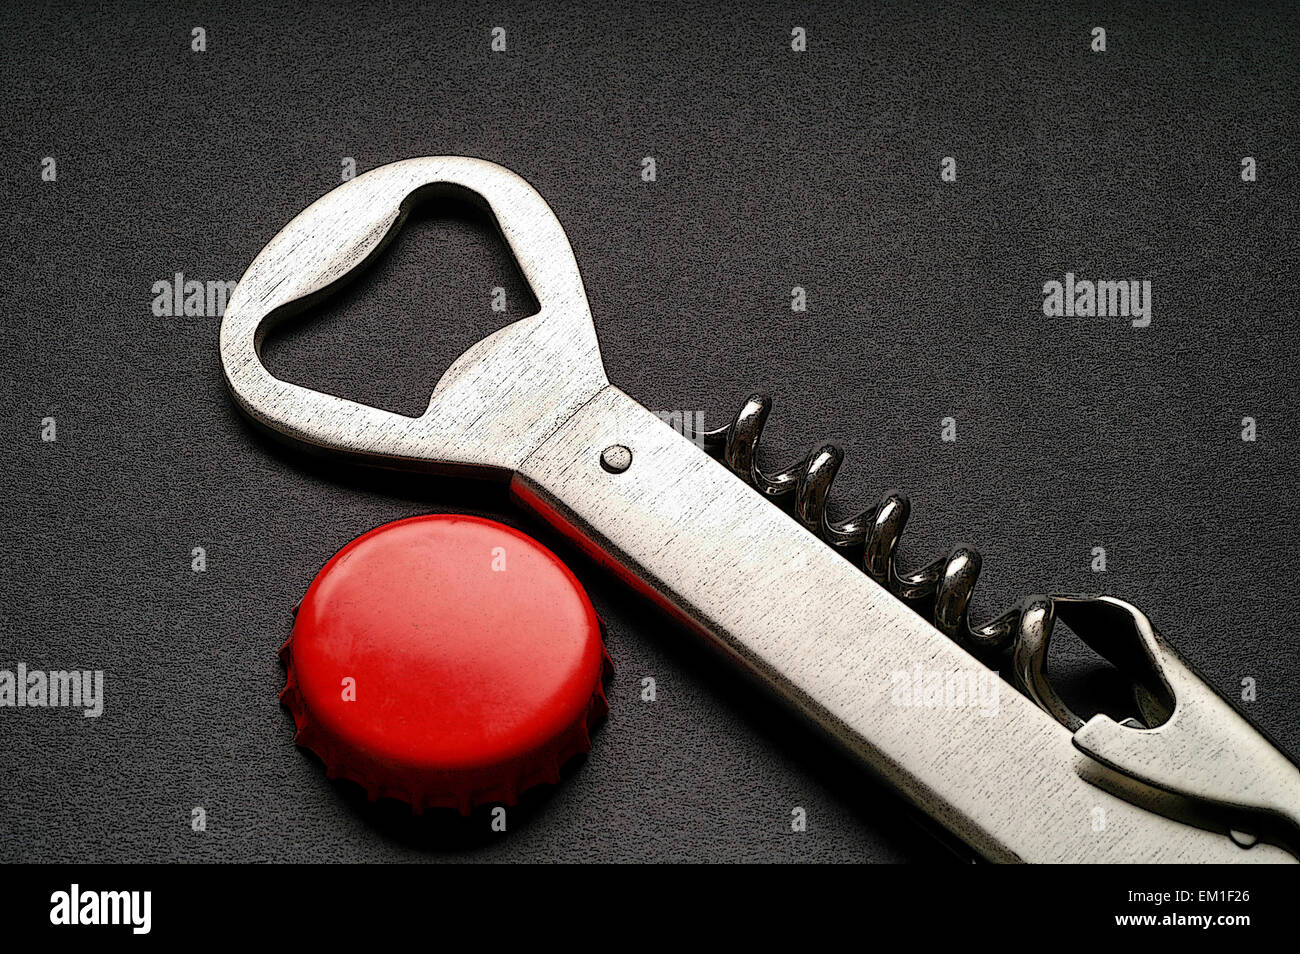 https://c8.alamy.com/comp/EM1F26/steel-corkscrew-and-bottle-opener-illustration-EM1F26.jpg